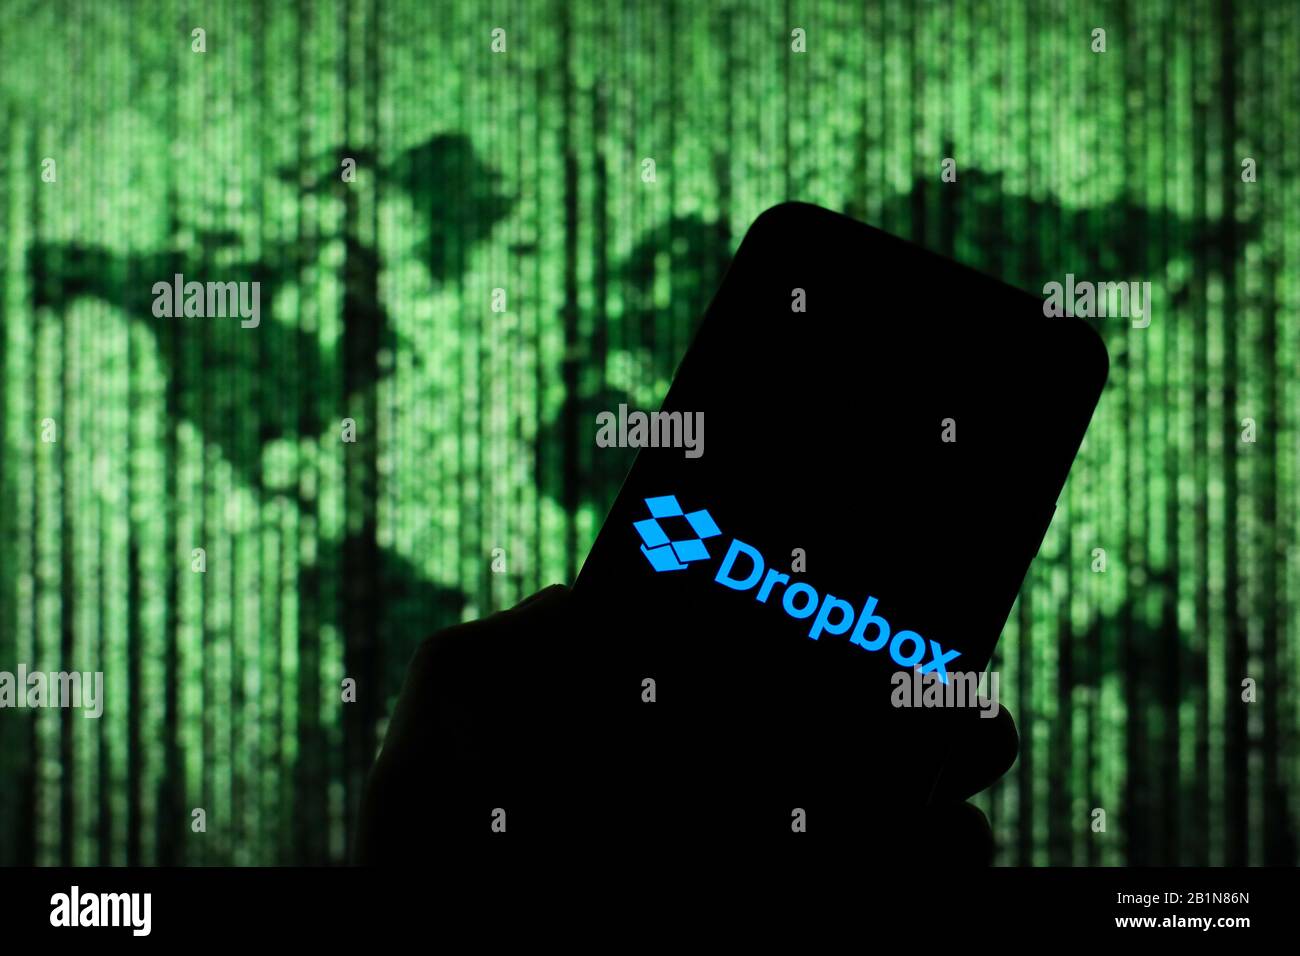 Dropbox Online-Cloud-Firmenlogo wird auf dem Smartphone-Bildschirm mit einer Matrix-ähnlichen Weltkarte angezeigt, die im Hintergrund verschwommen zu sehen ist Stockfoto